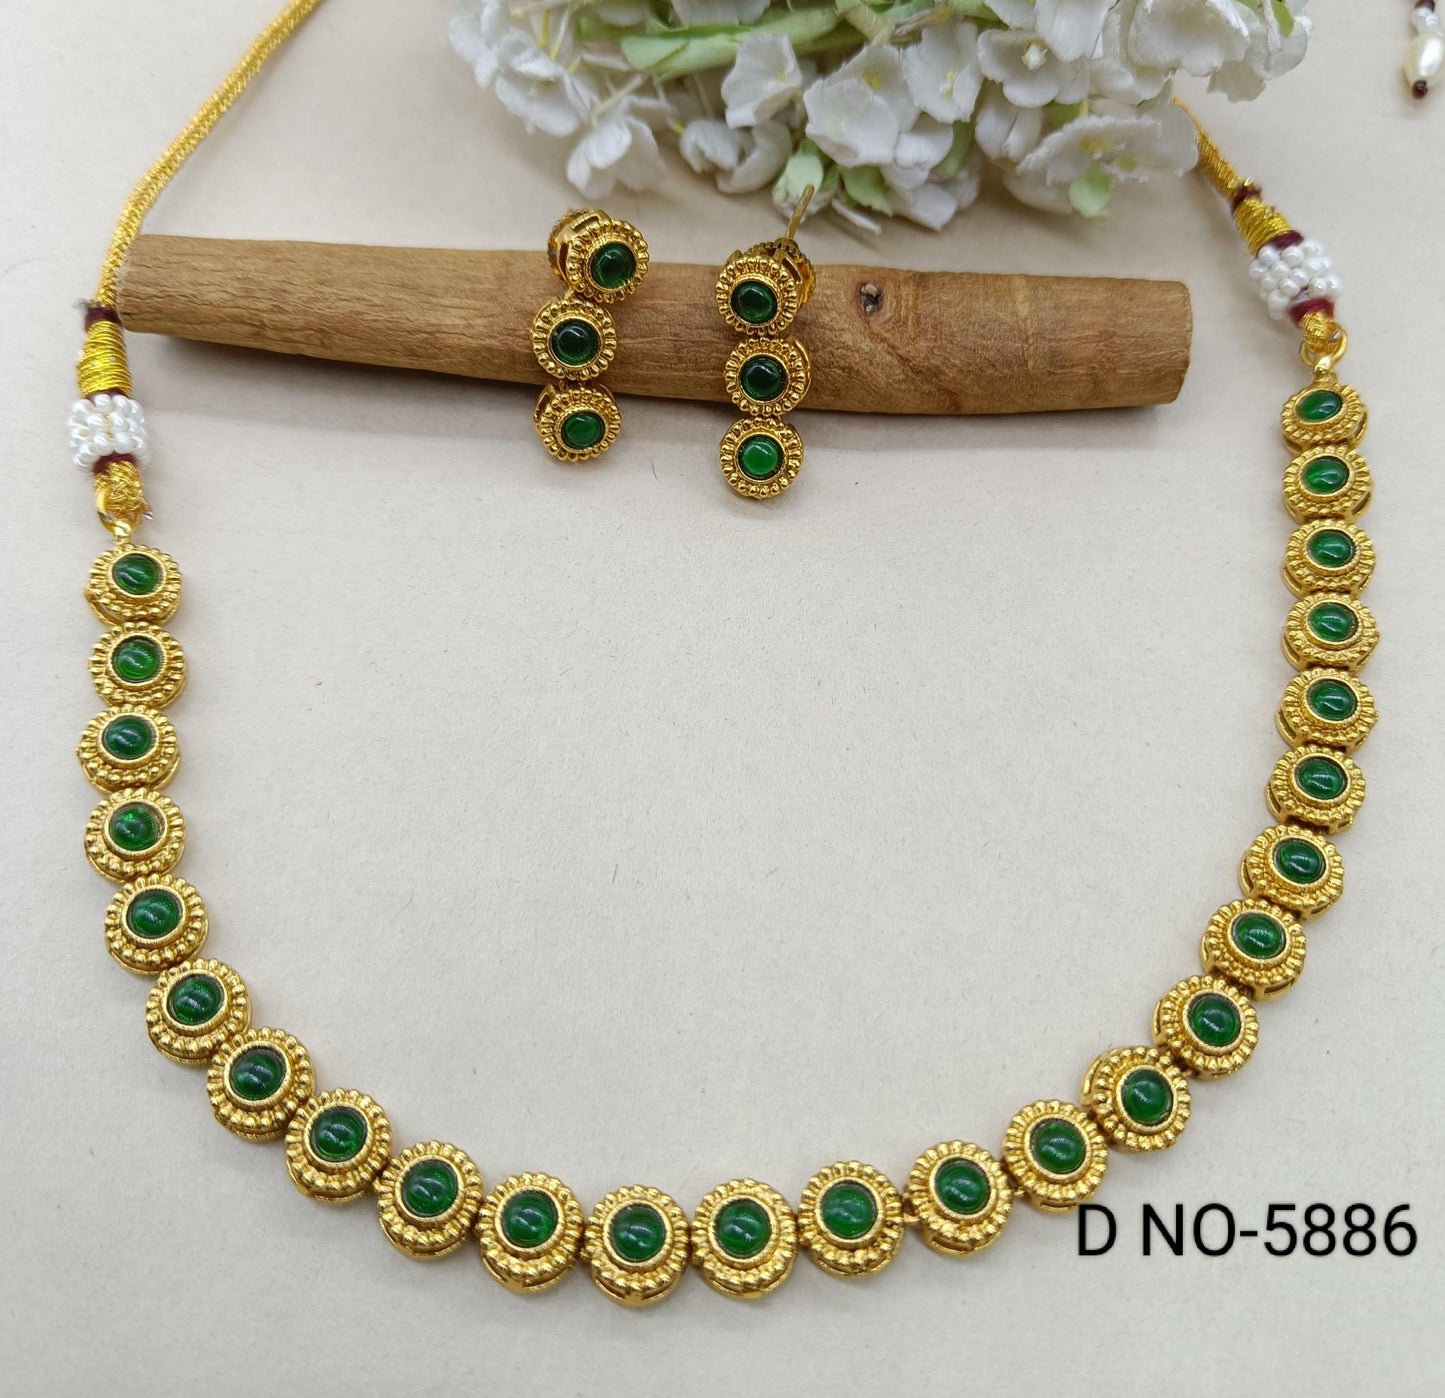 Antique Golden Necklace Set 5886 D3 - rchiecreation